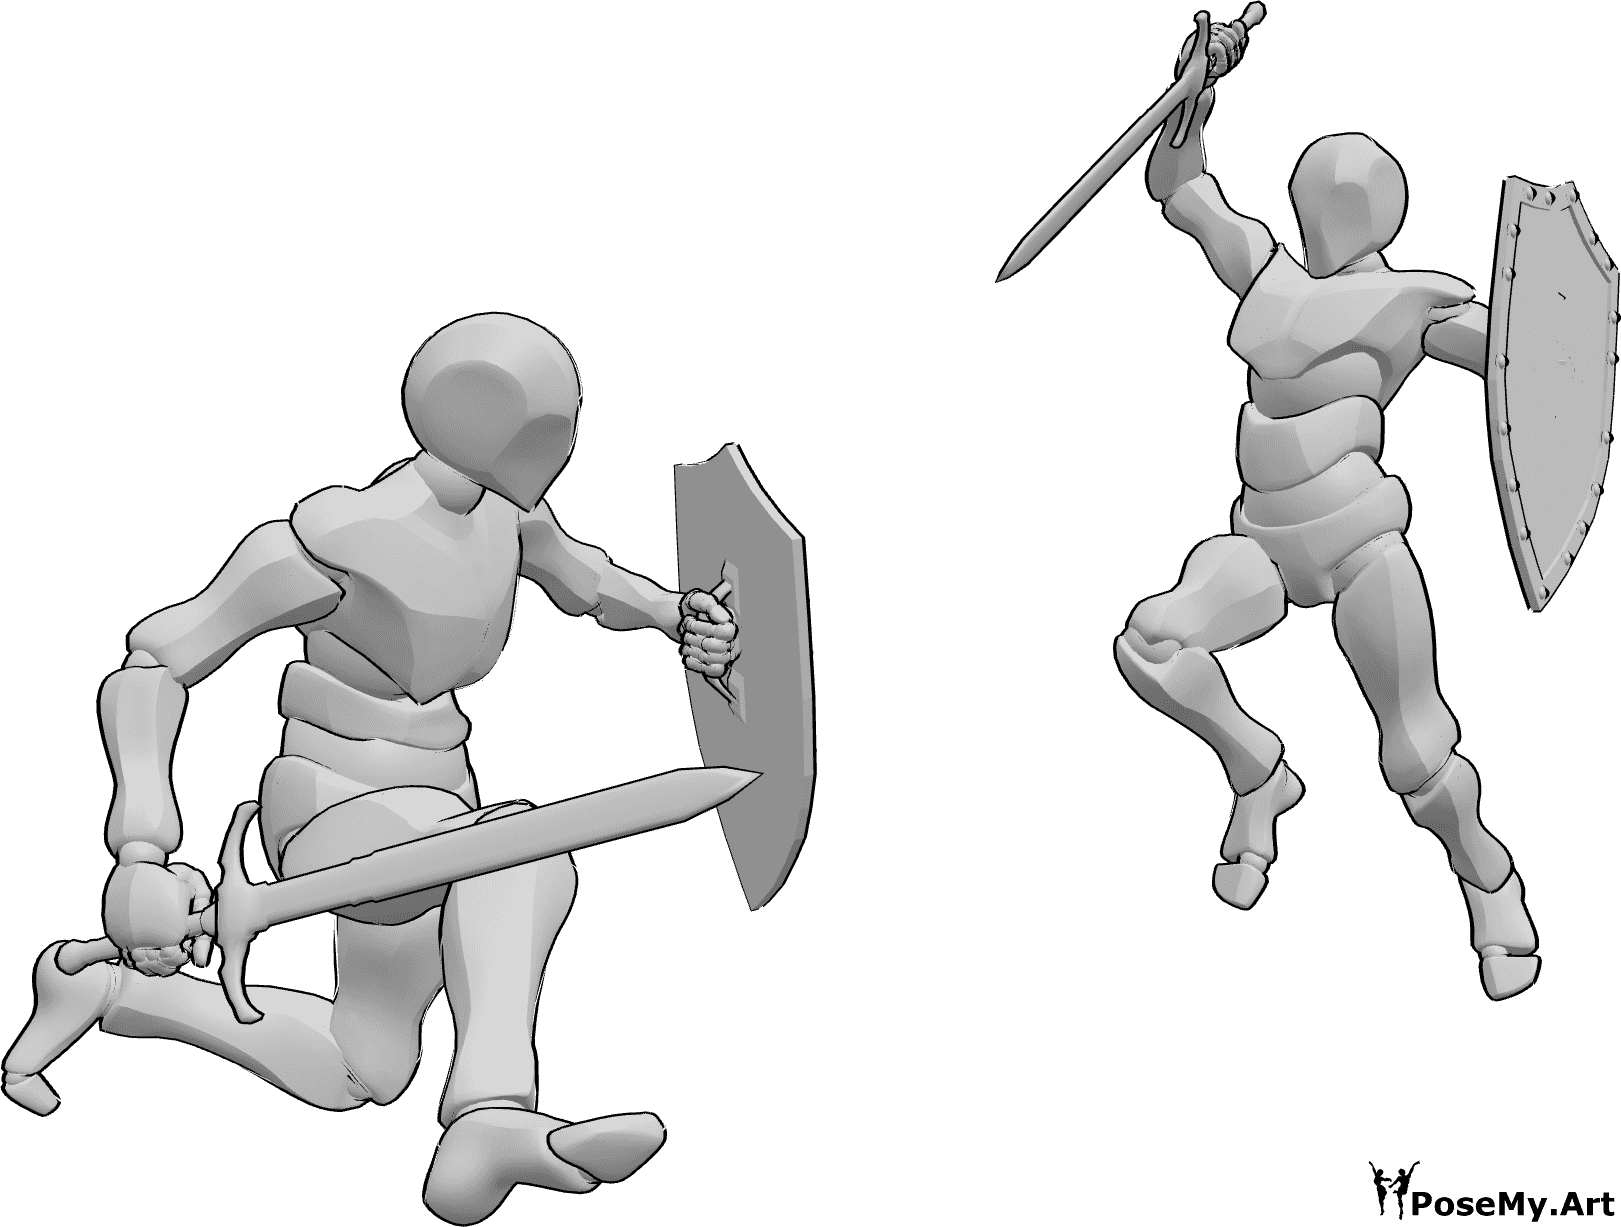 Referência de poses- Pose de combate com espada e escudo - Dois homens lutam, seguram espadas e escudos e fazem uma pose de ataque